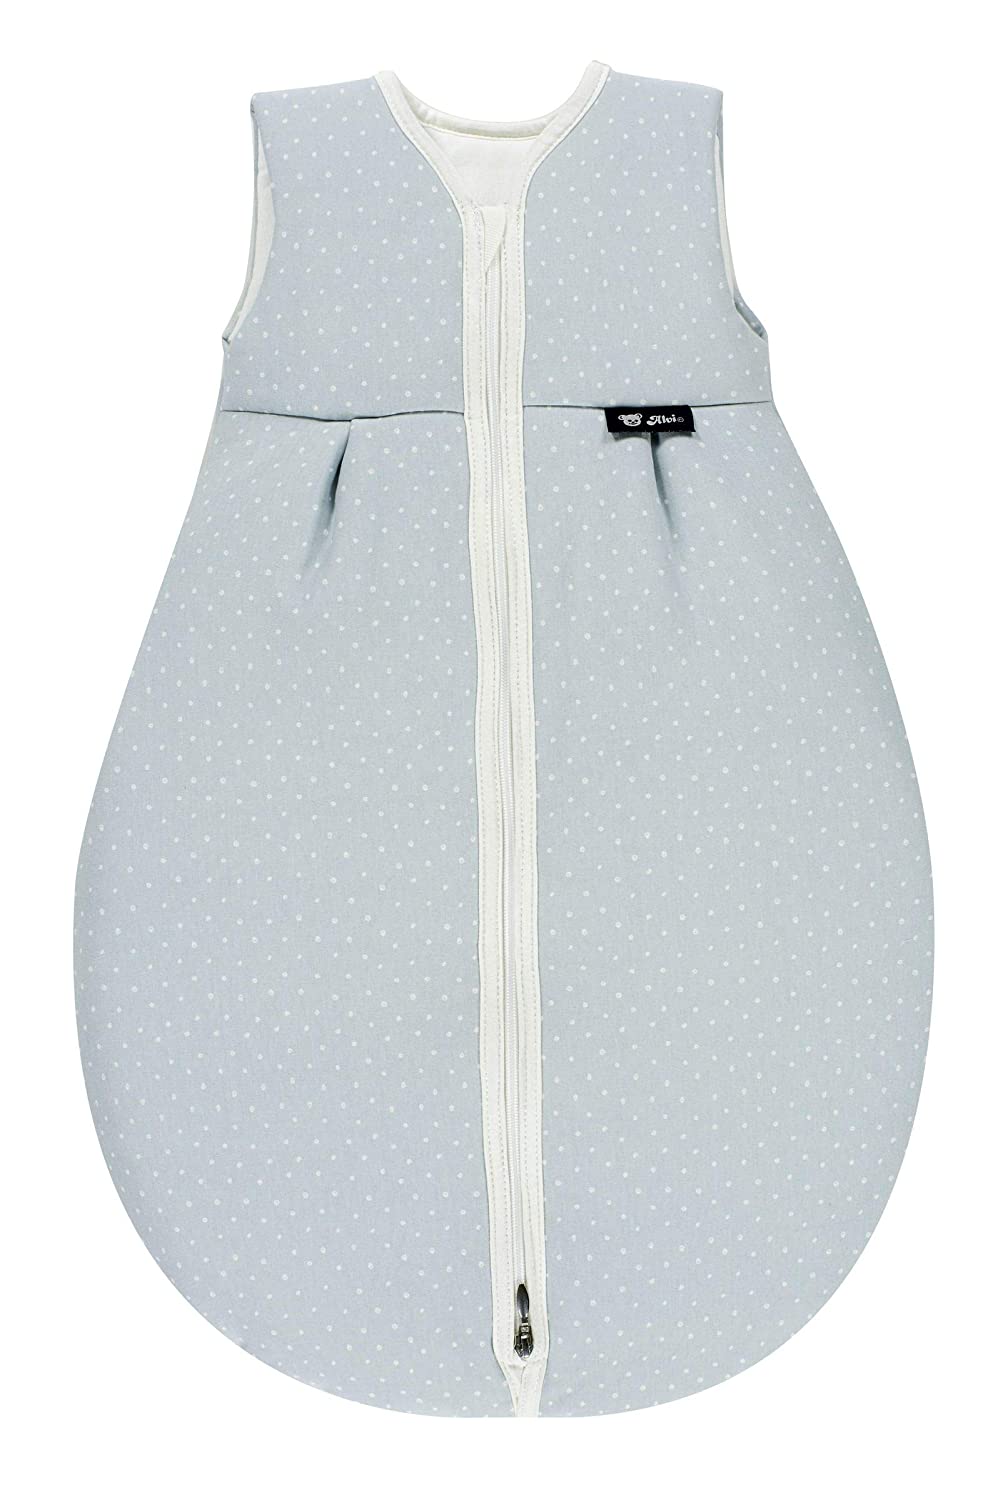 Alvi Mäxchen Light Summer Sleeping Bag New Dots Size 70